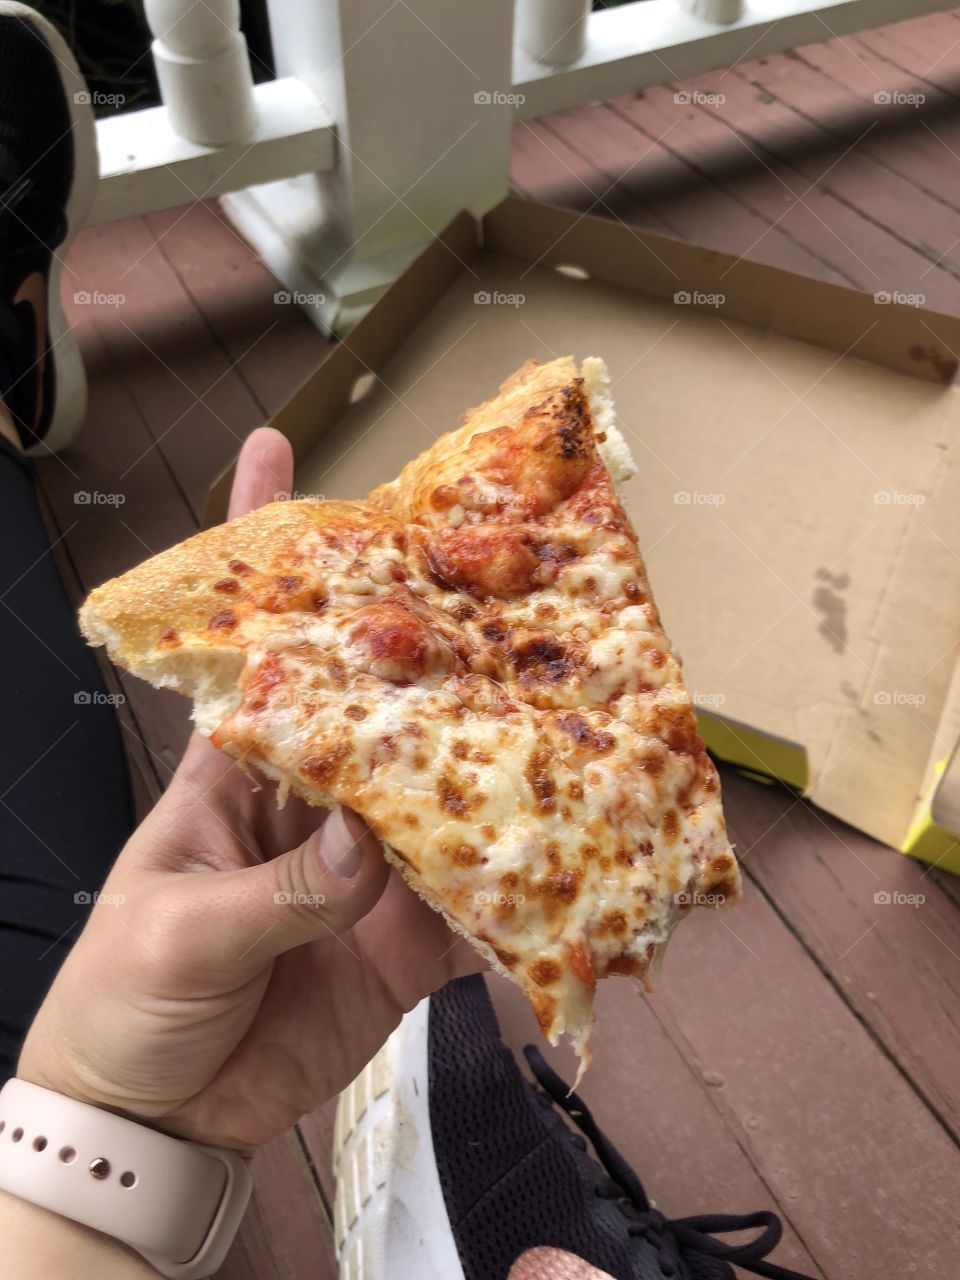 Half eaten pizza